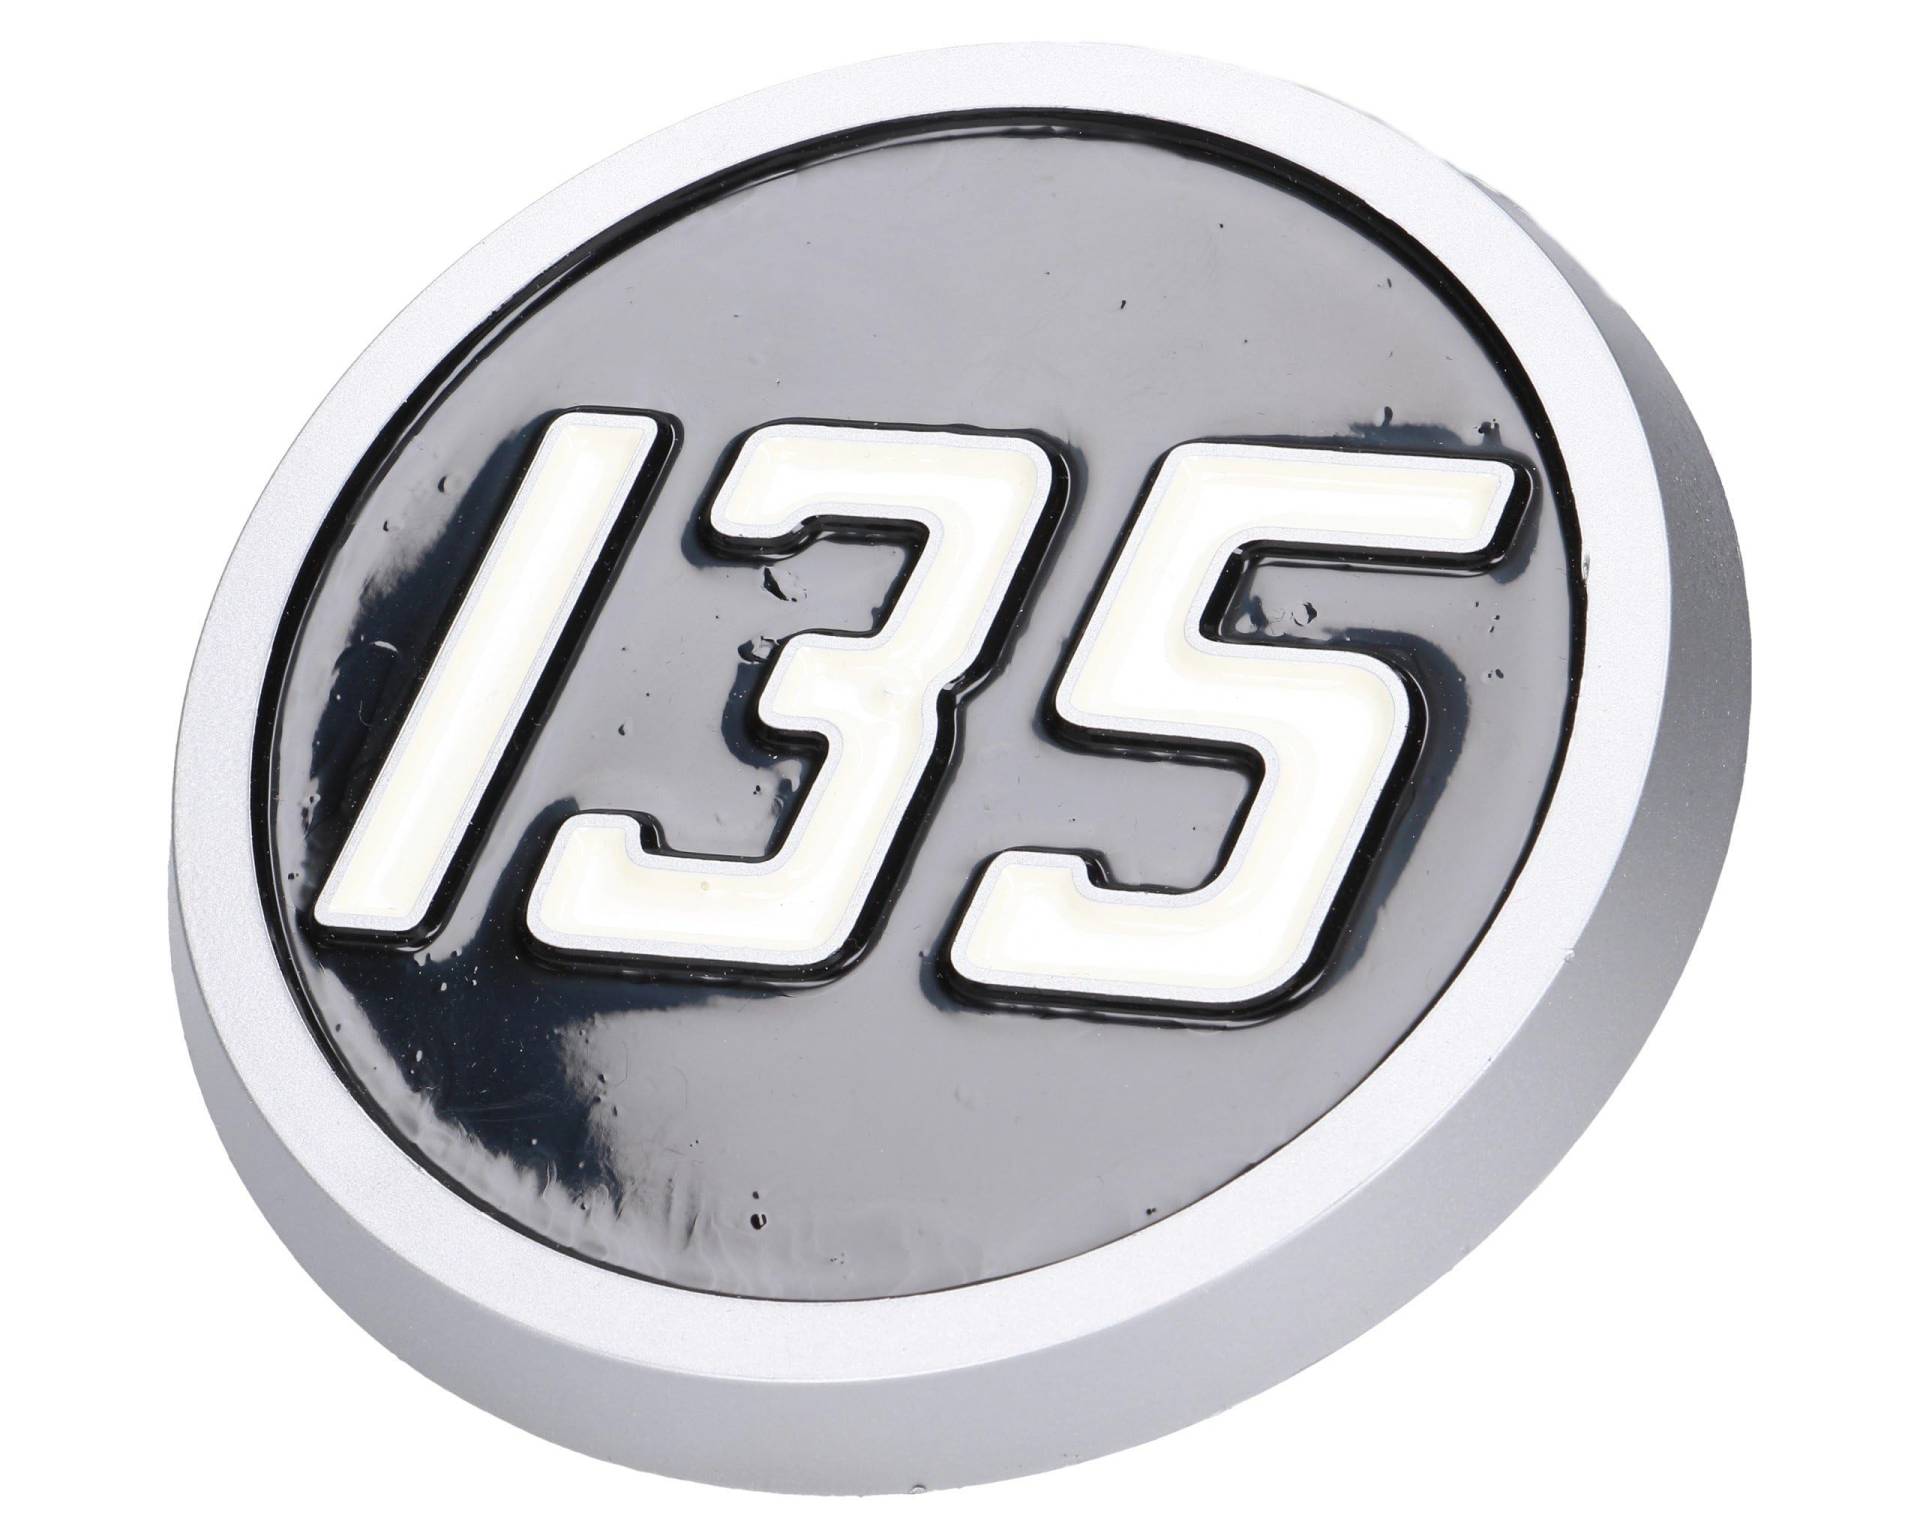 marteo® Emblem, Logo Für Massey Ferguson Mf 135 Motorhaube 1865460m1 | Immer Perfekte Passform, Einfache Installation, Hohe Qualität und Langlebigkeit | Passend für Verschiedene Maschinenmodelle von marteo